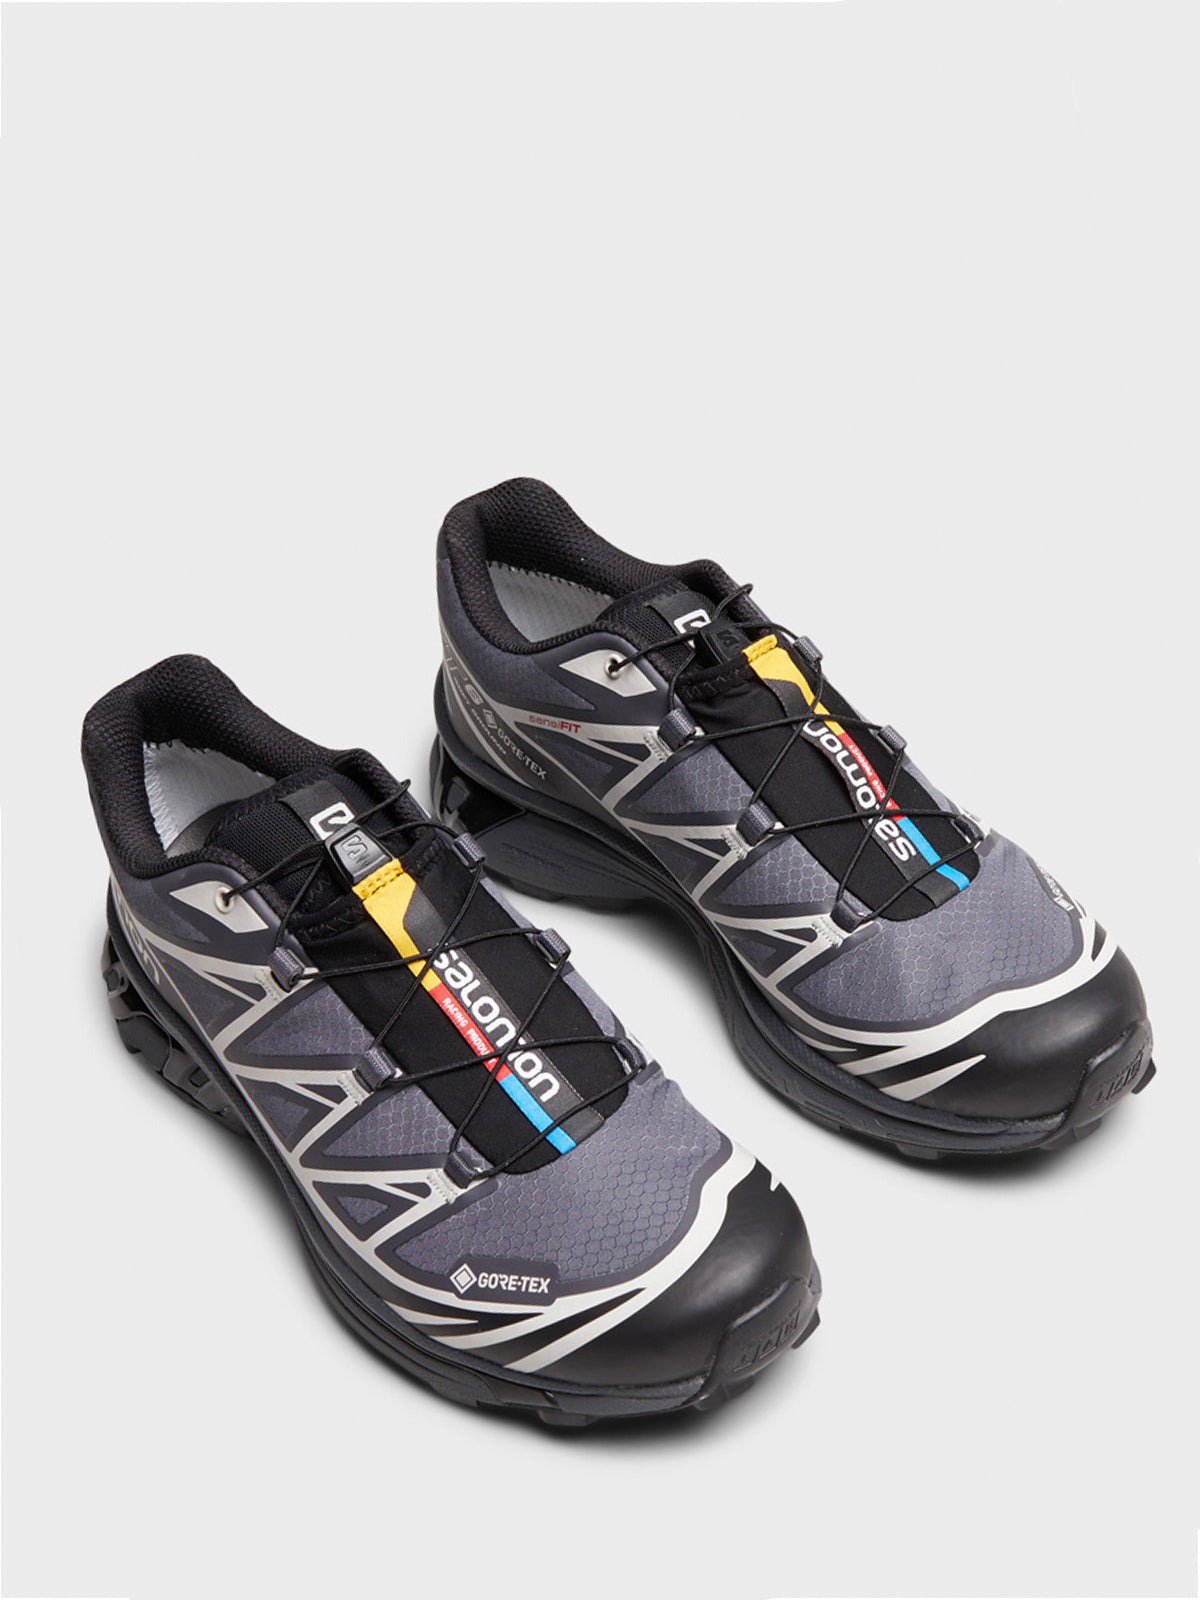 XT-6 GTX Sneakers in Black, Ebony and Lunar Rock